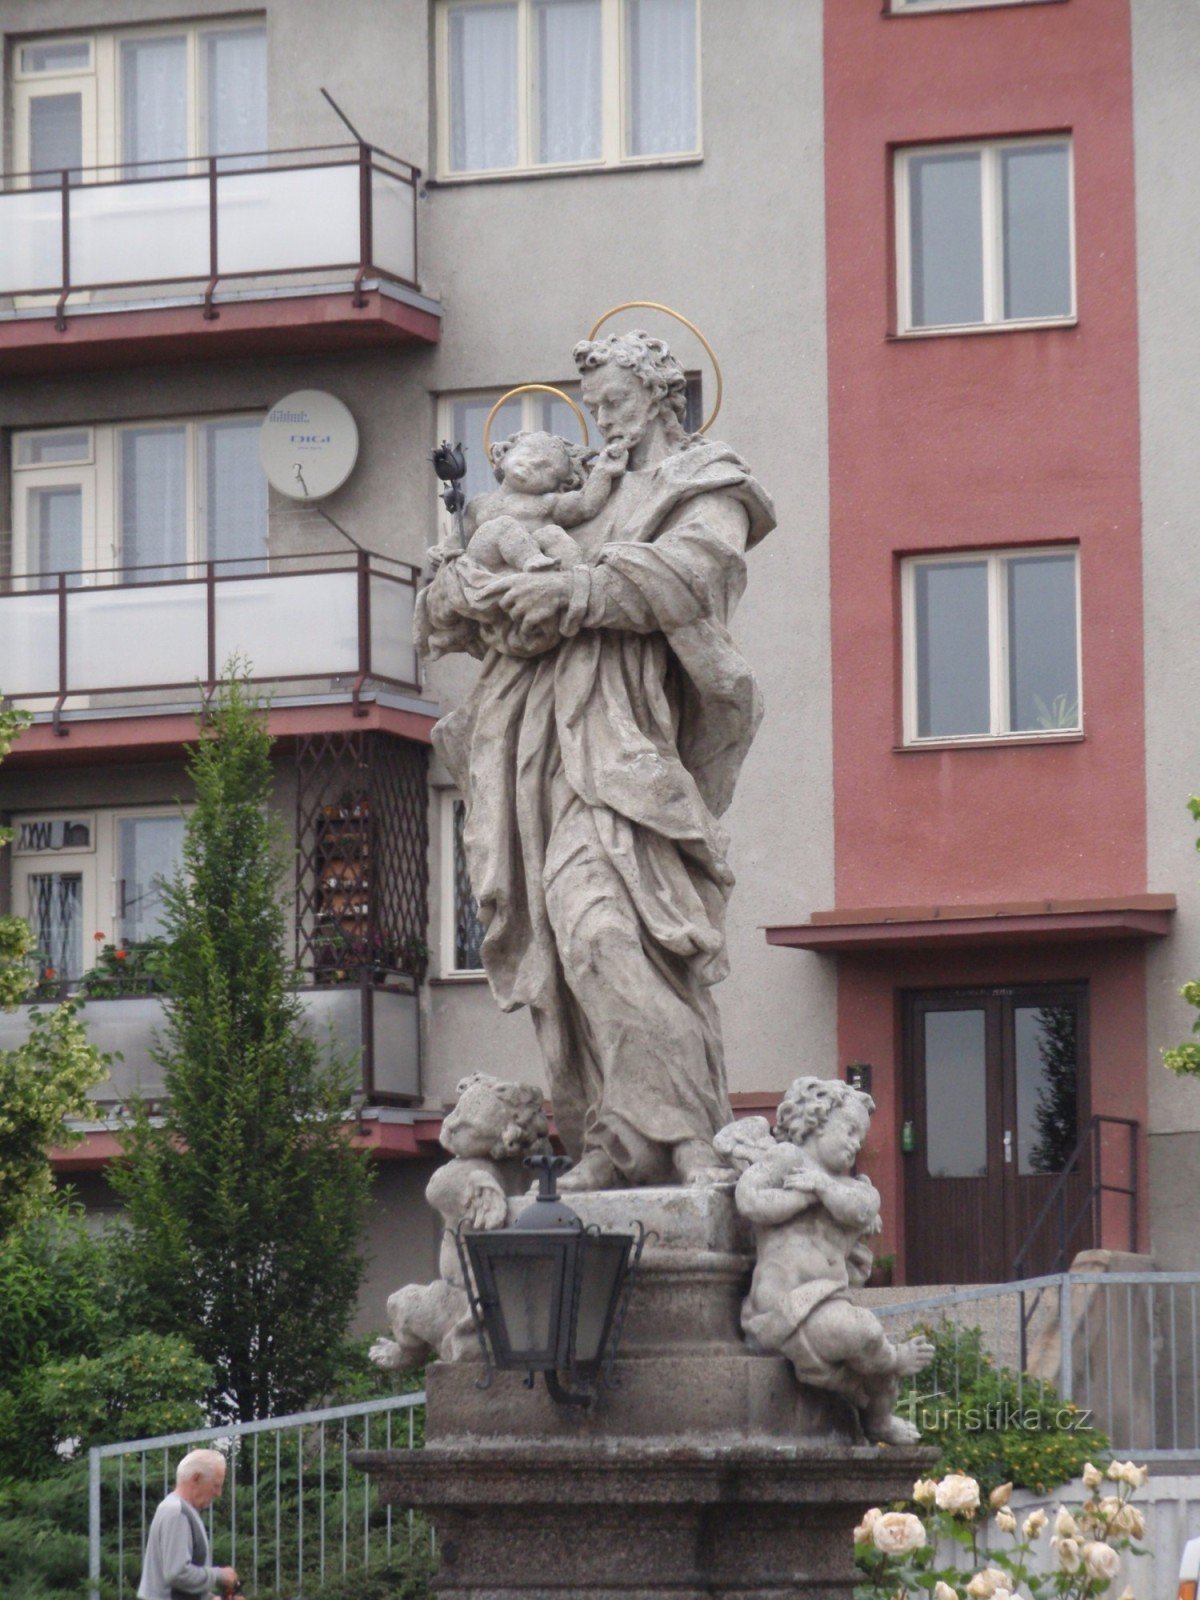 Statue of St. Joseph with Baby Jesus in Velké Meziříčí